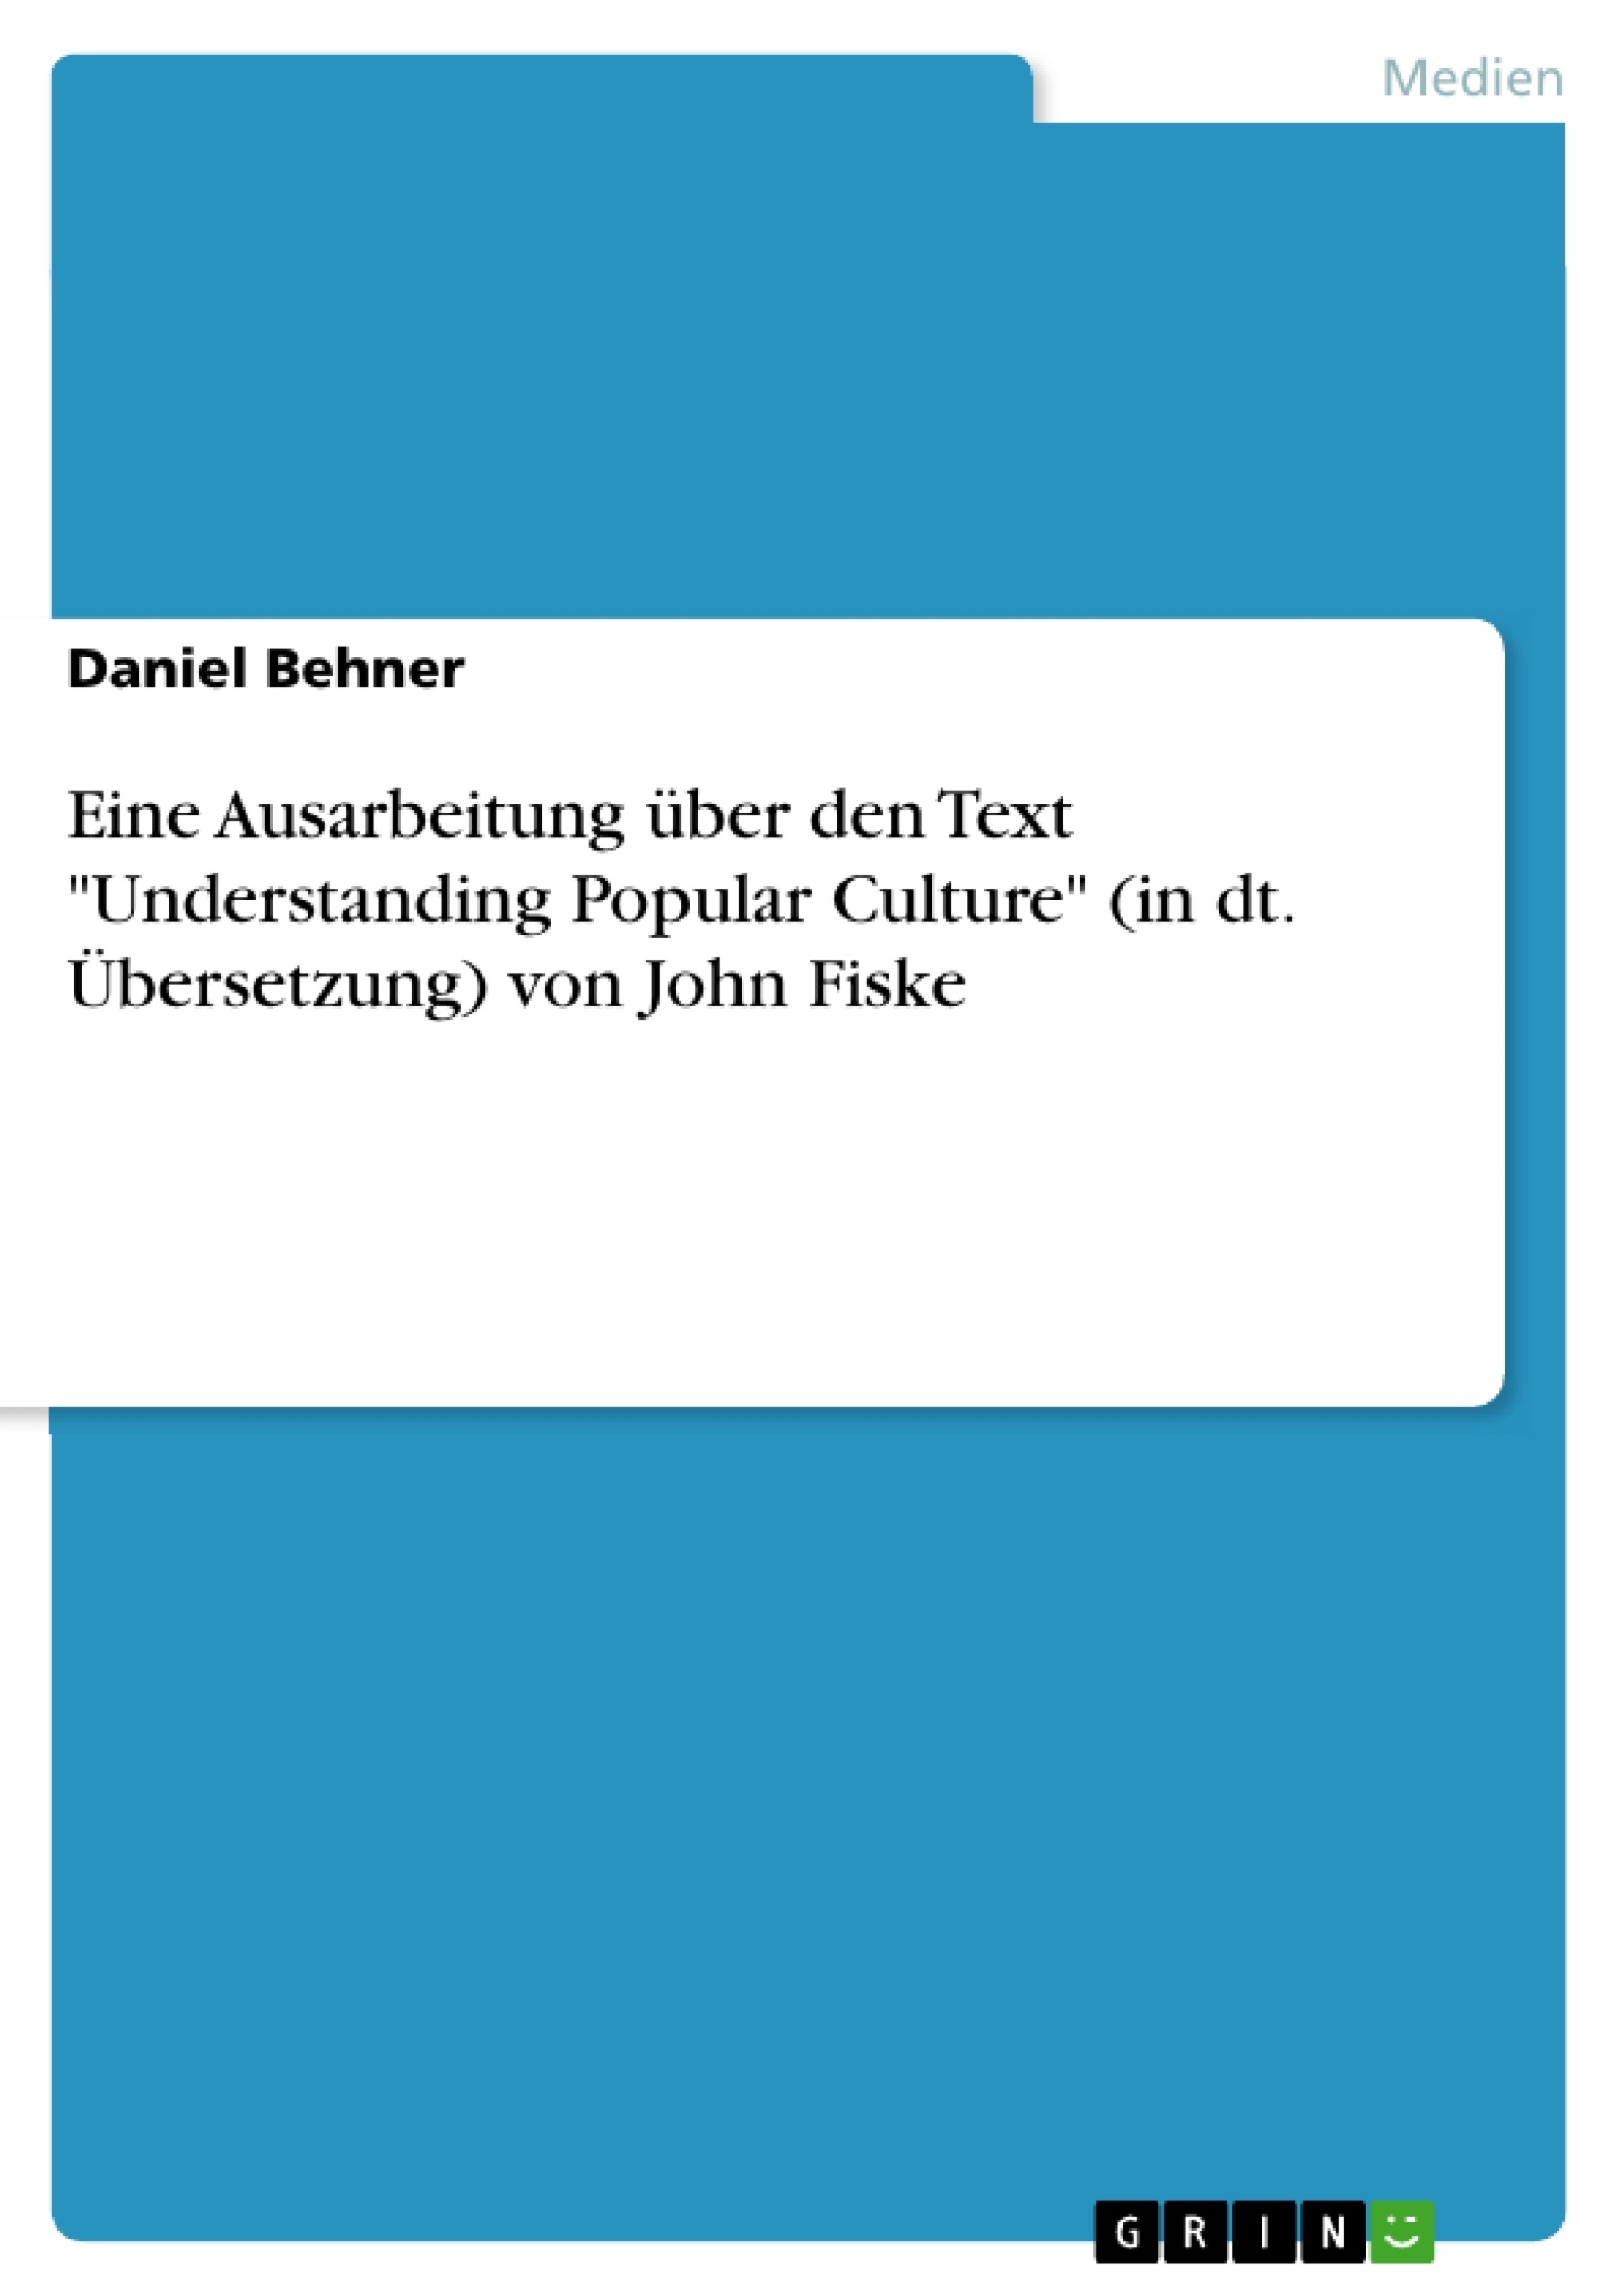 Título: Eine Ausarbeitung über den Text "Understanding Popular Culture" (in dt. Übersetzung) von John Fiske